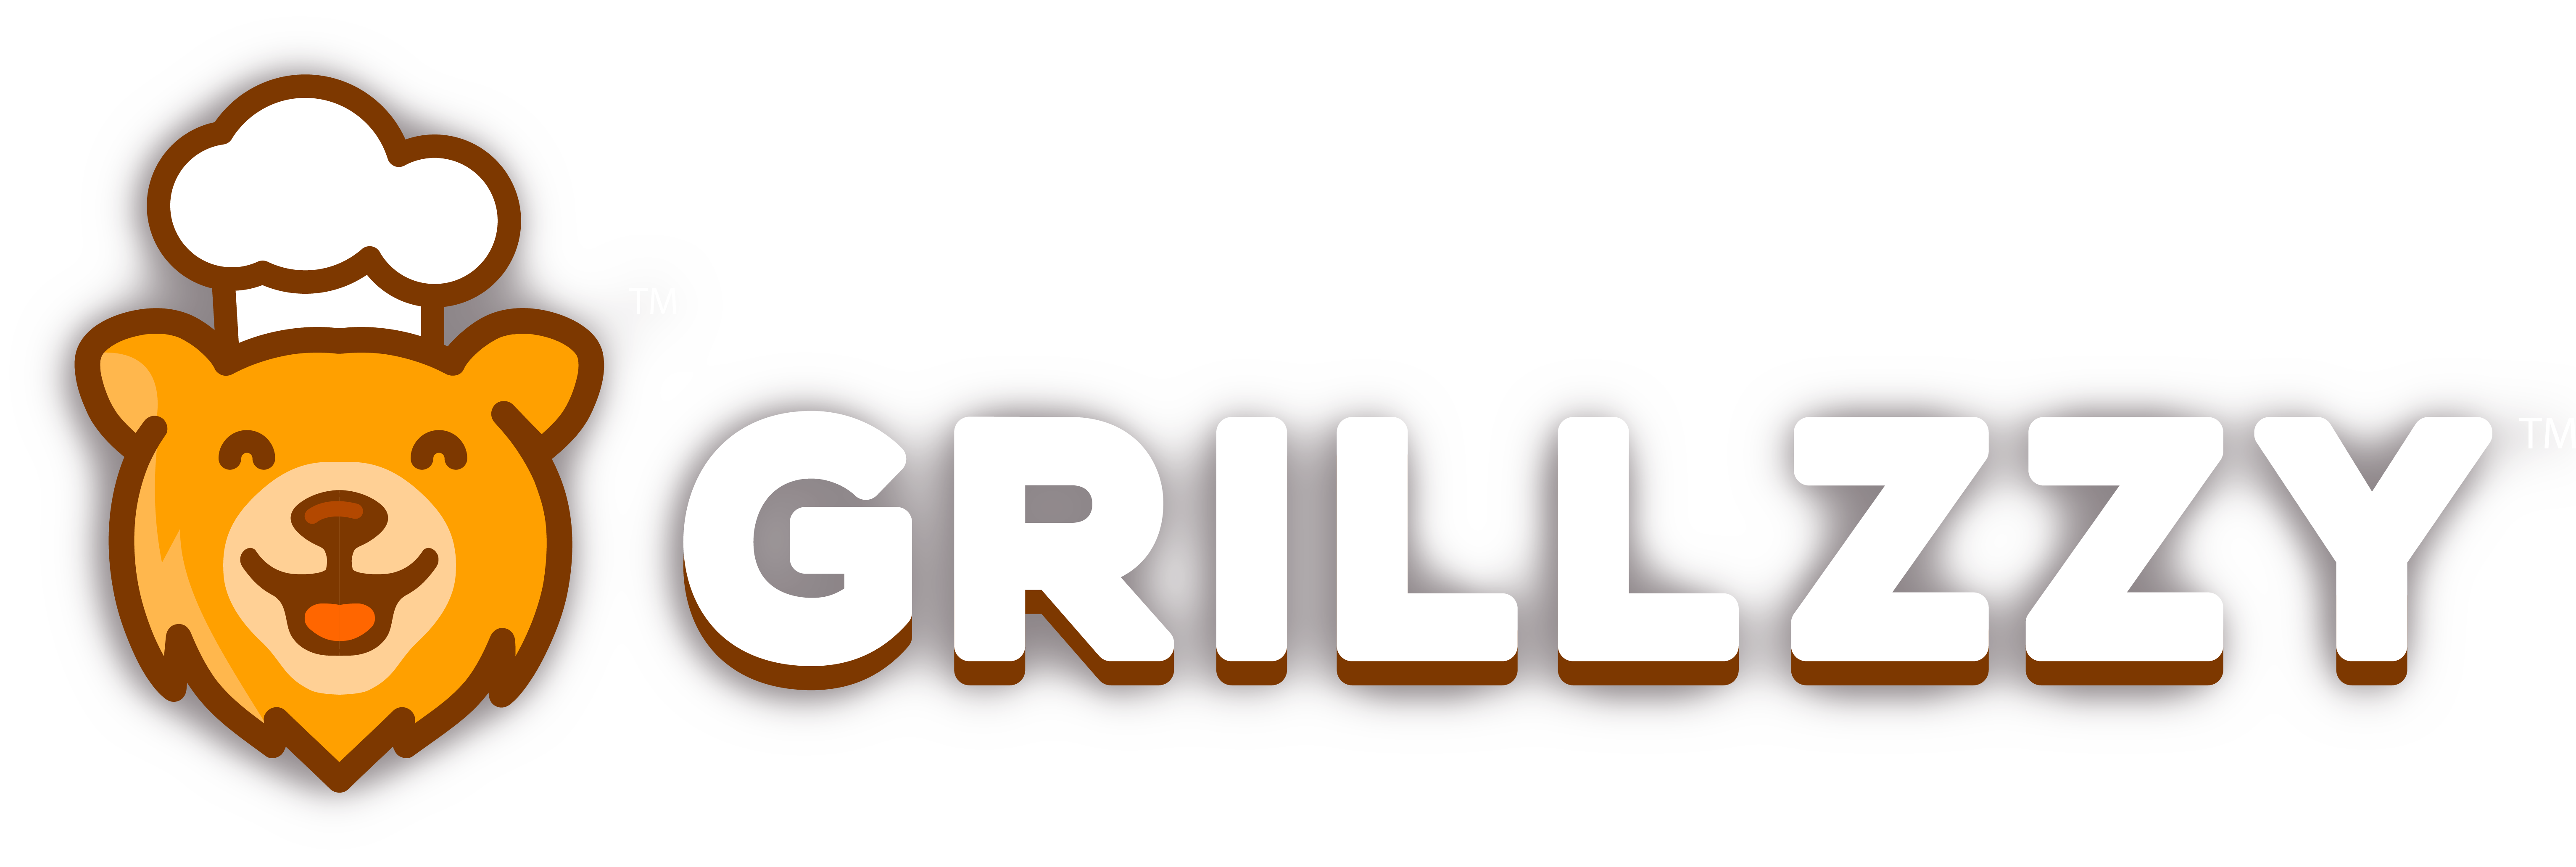 Grillzzy Logo